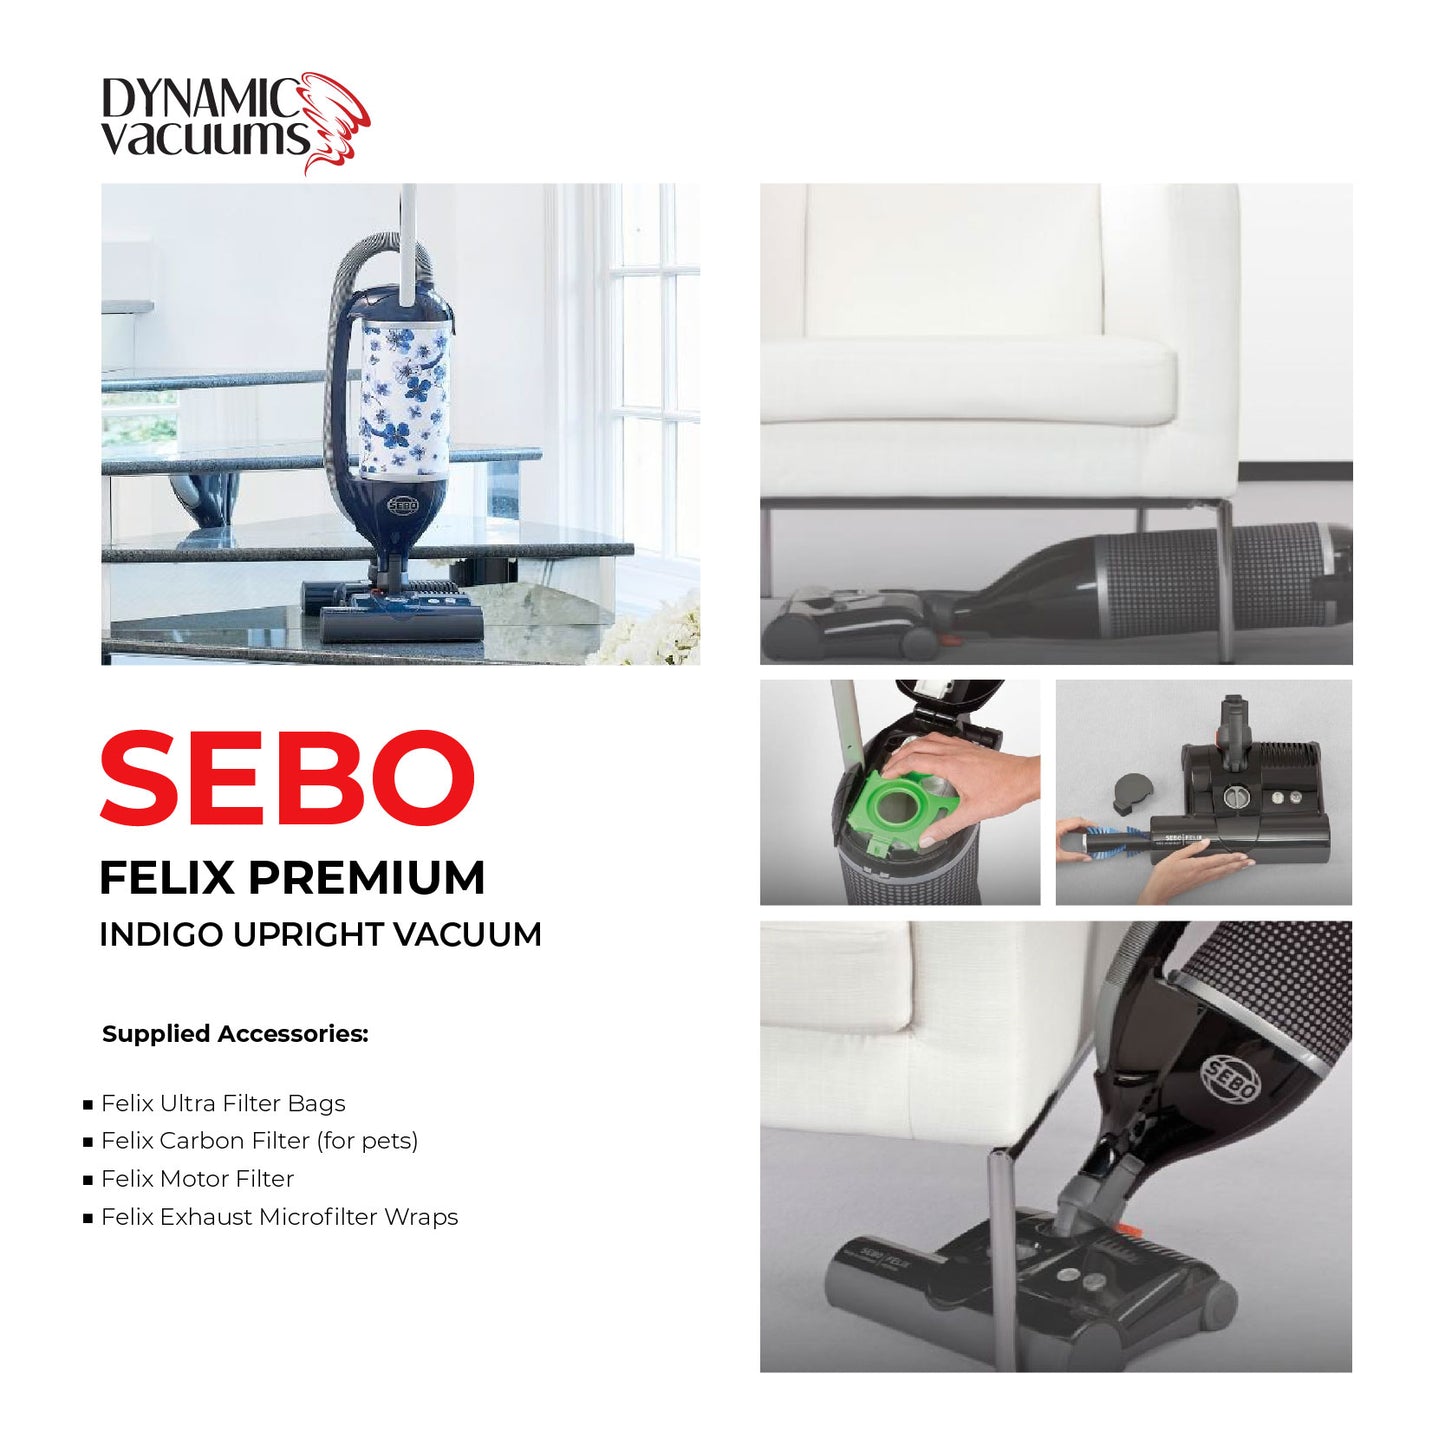 Sebo Felix Premium Indigo Upright Vacuum